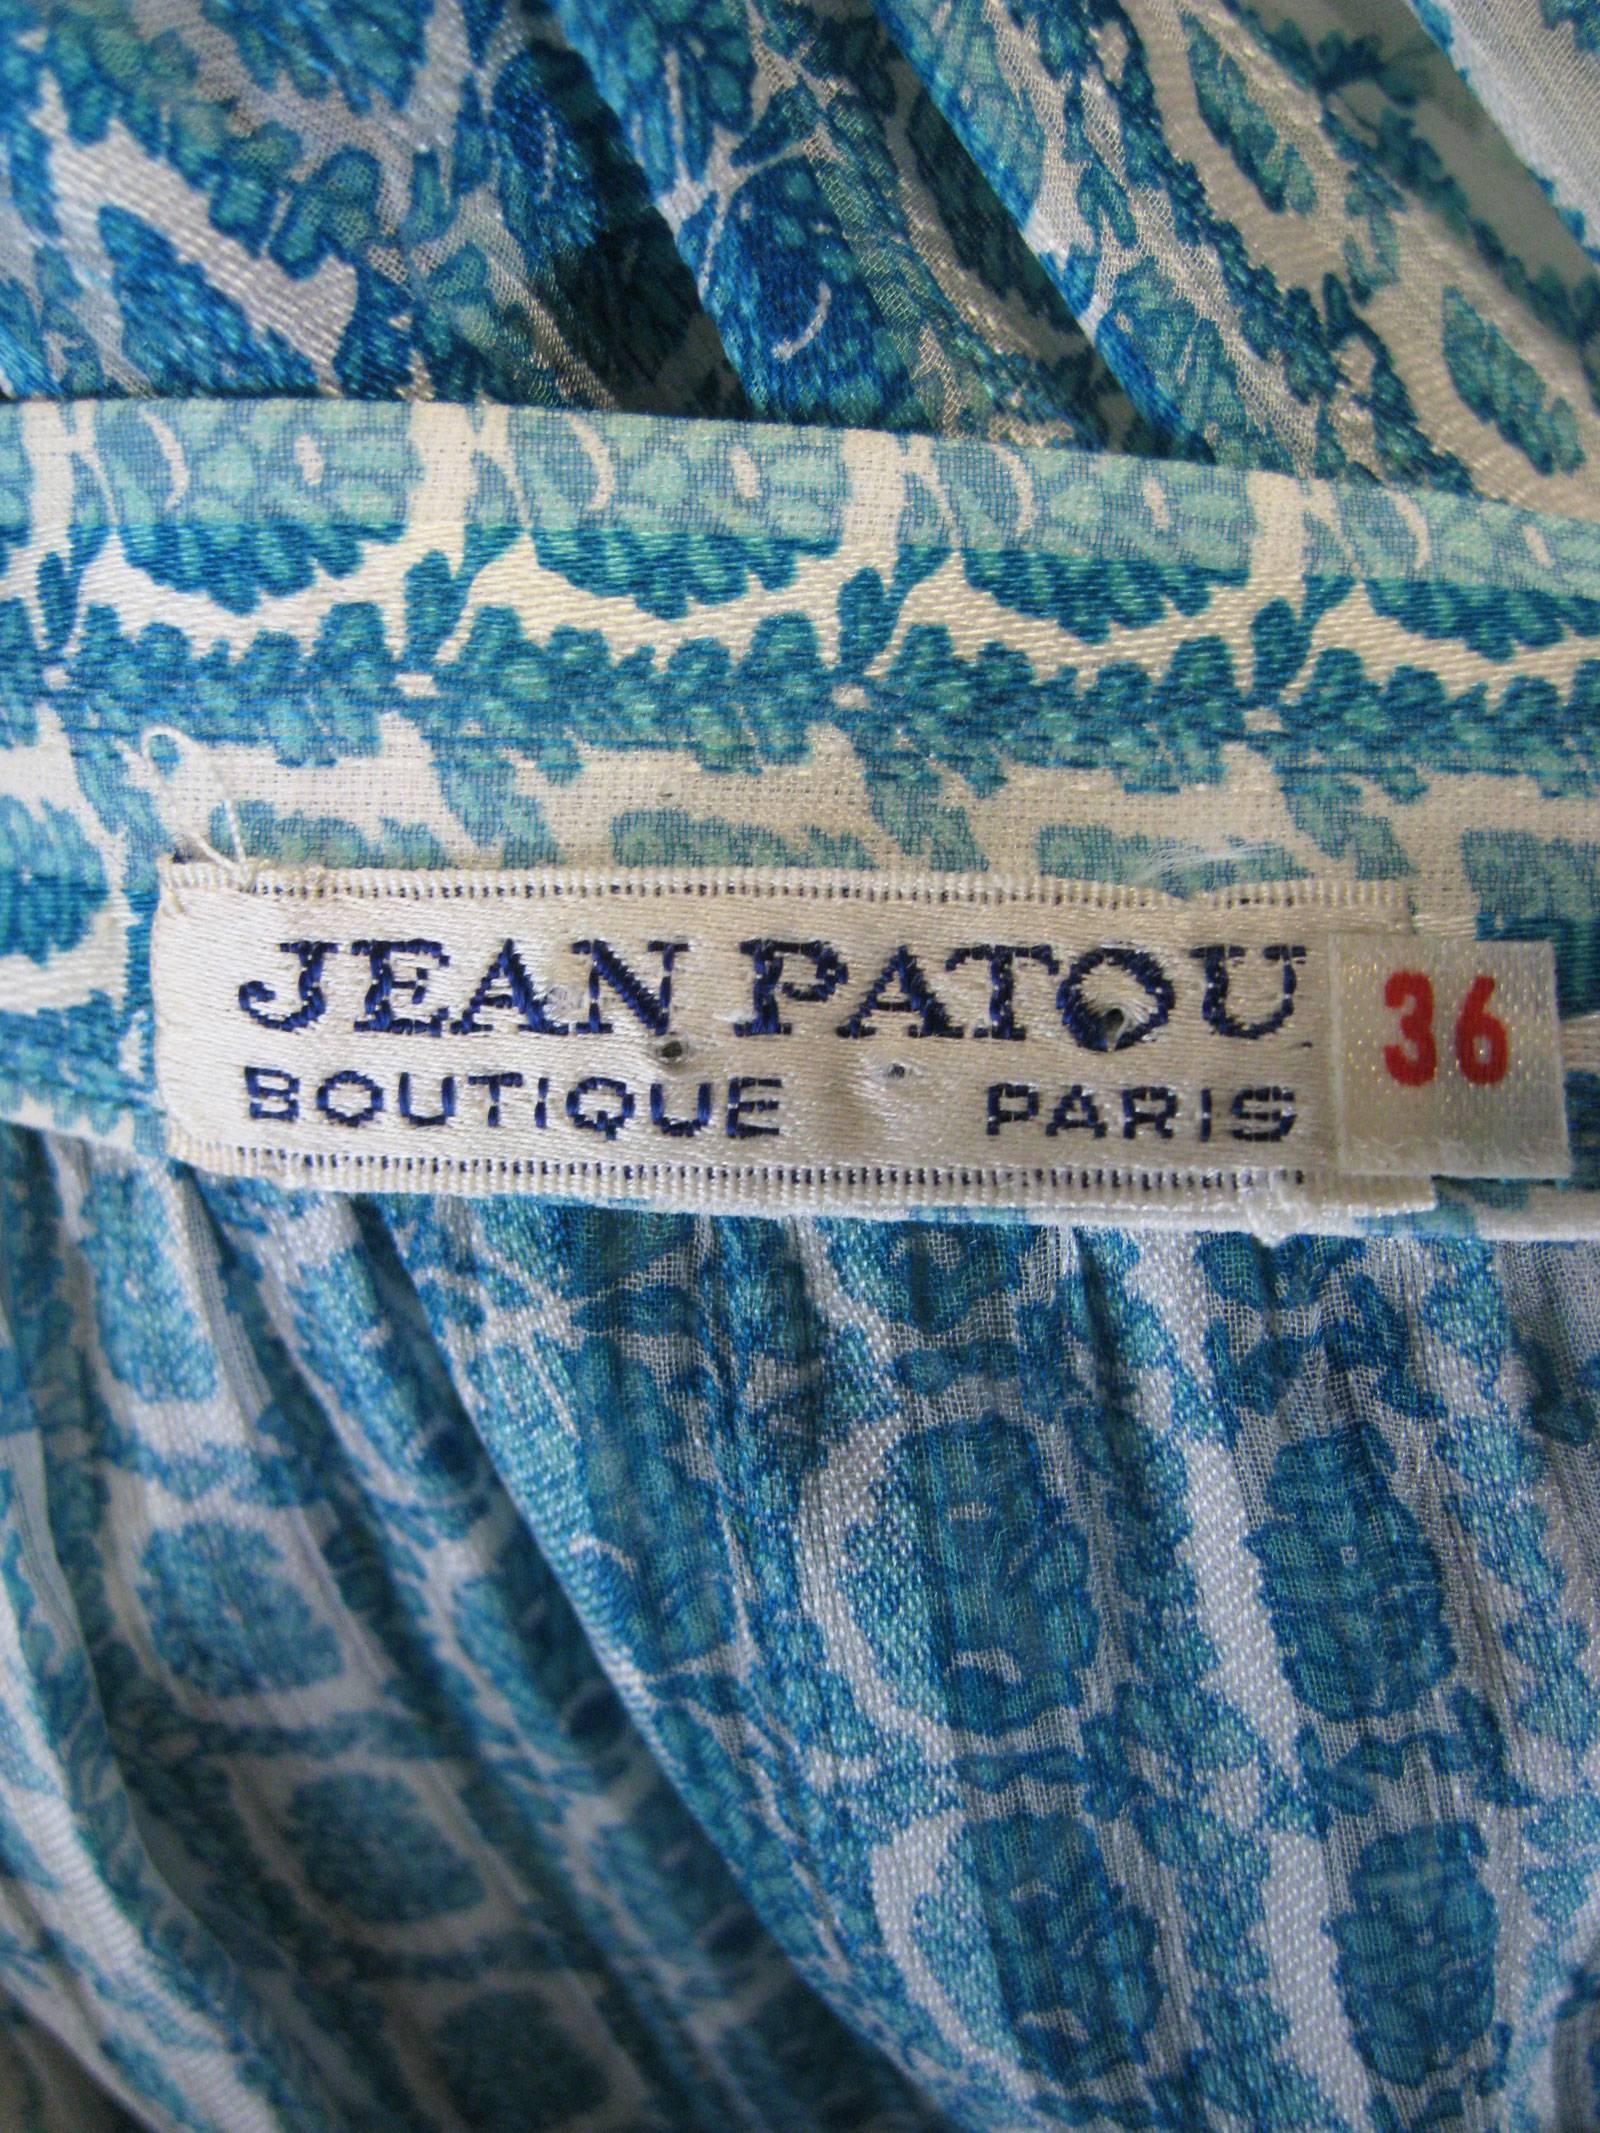 Jean Patou Silk Chiffon Print Dress For Sale 3